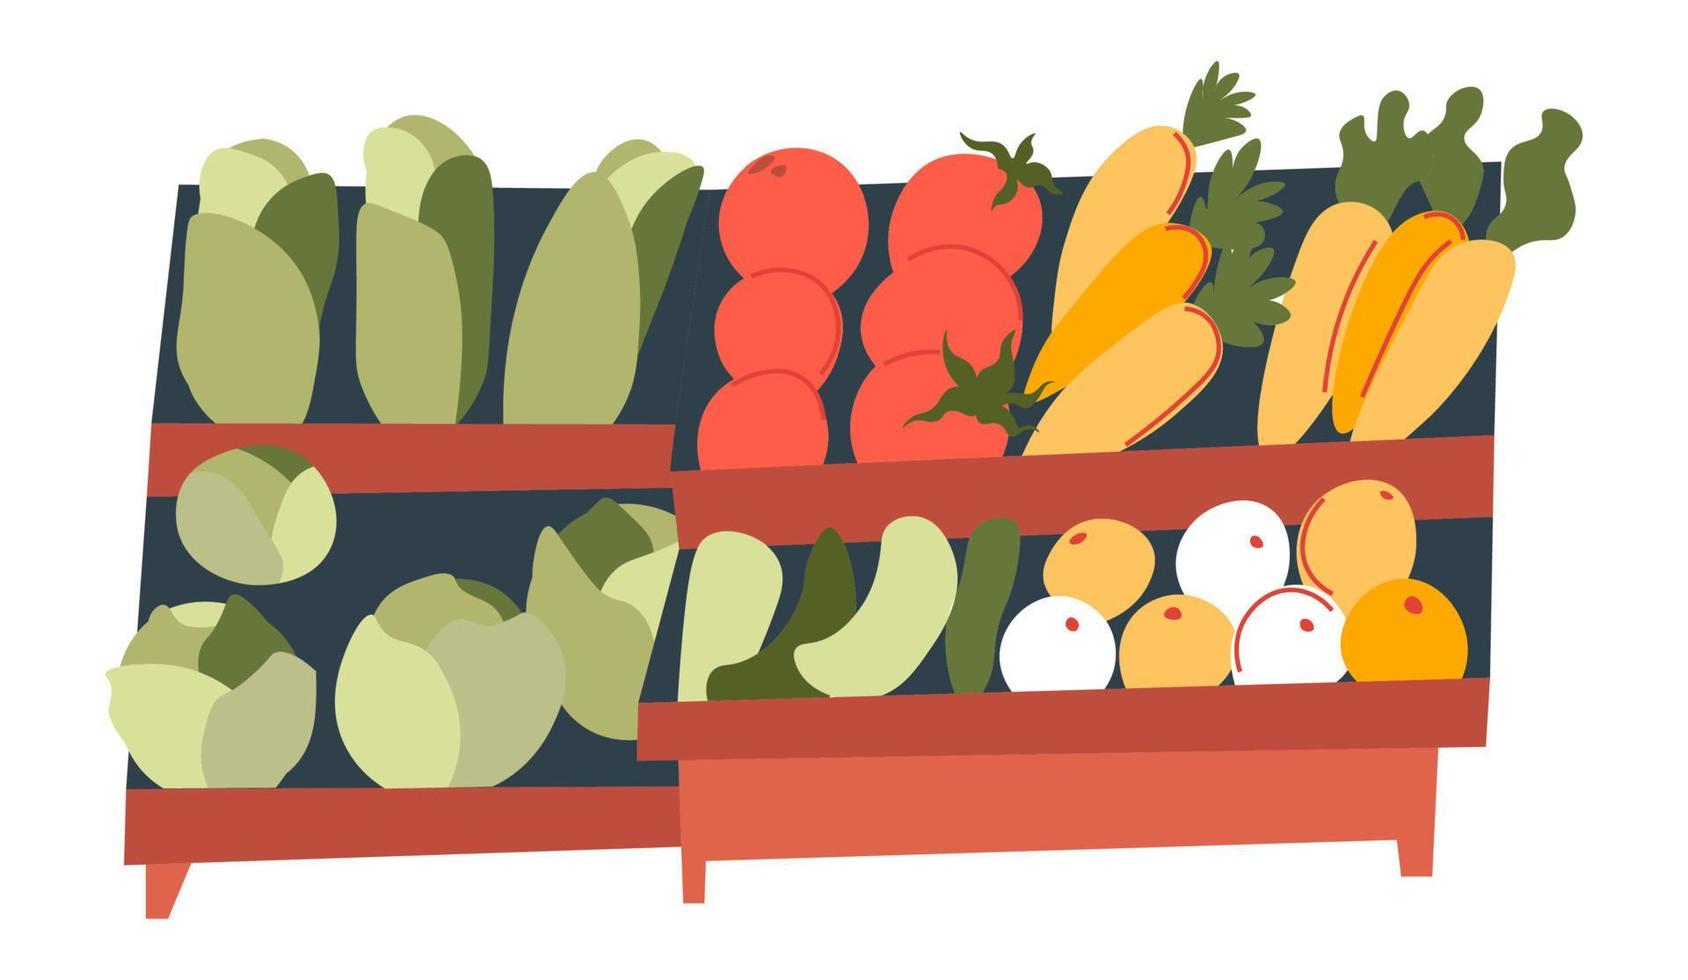 prateleiras do mercado com vetor de tomates e cenouras